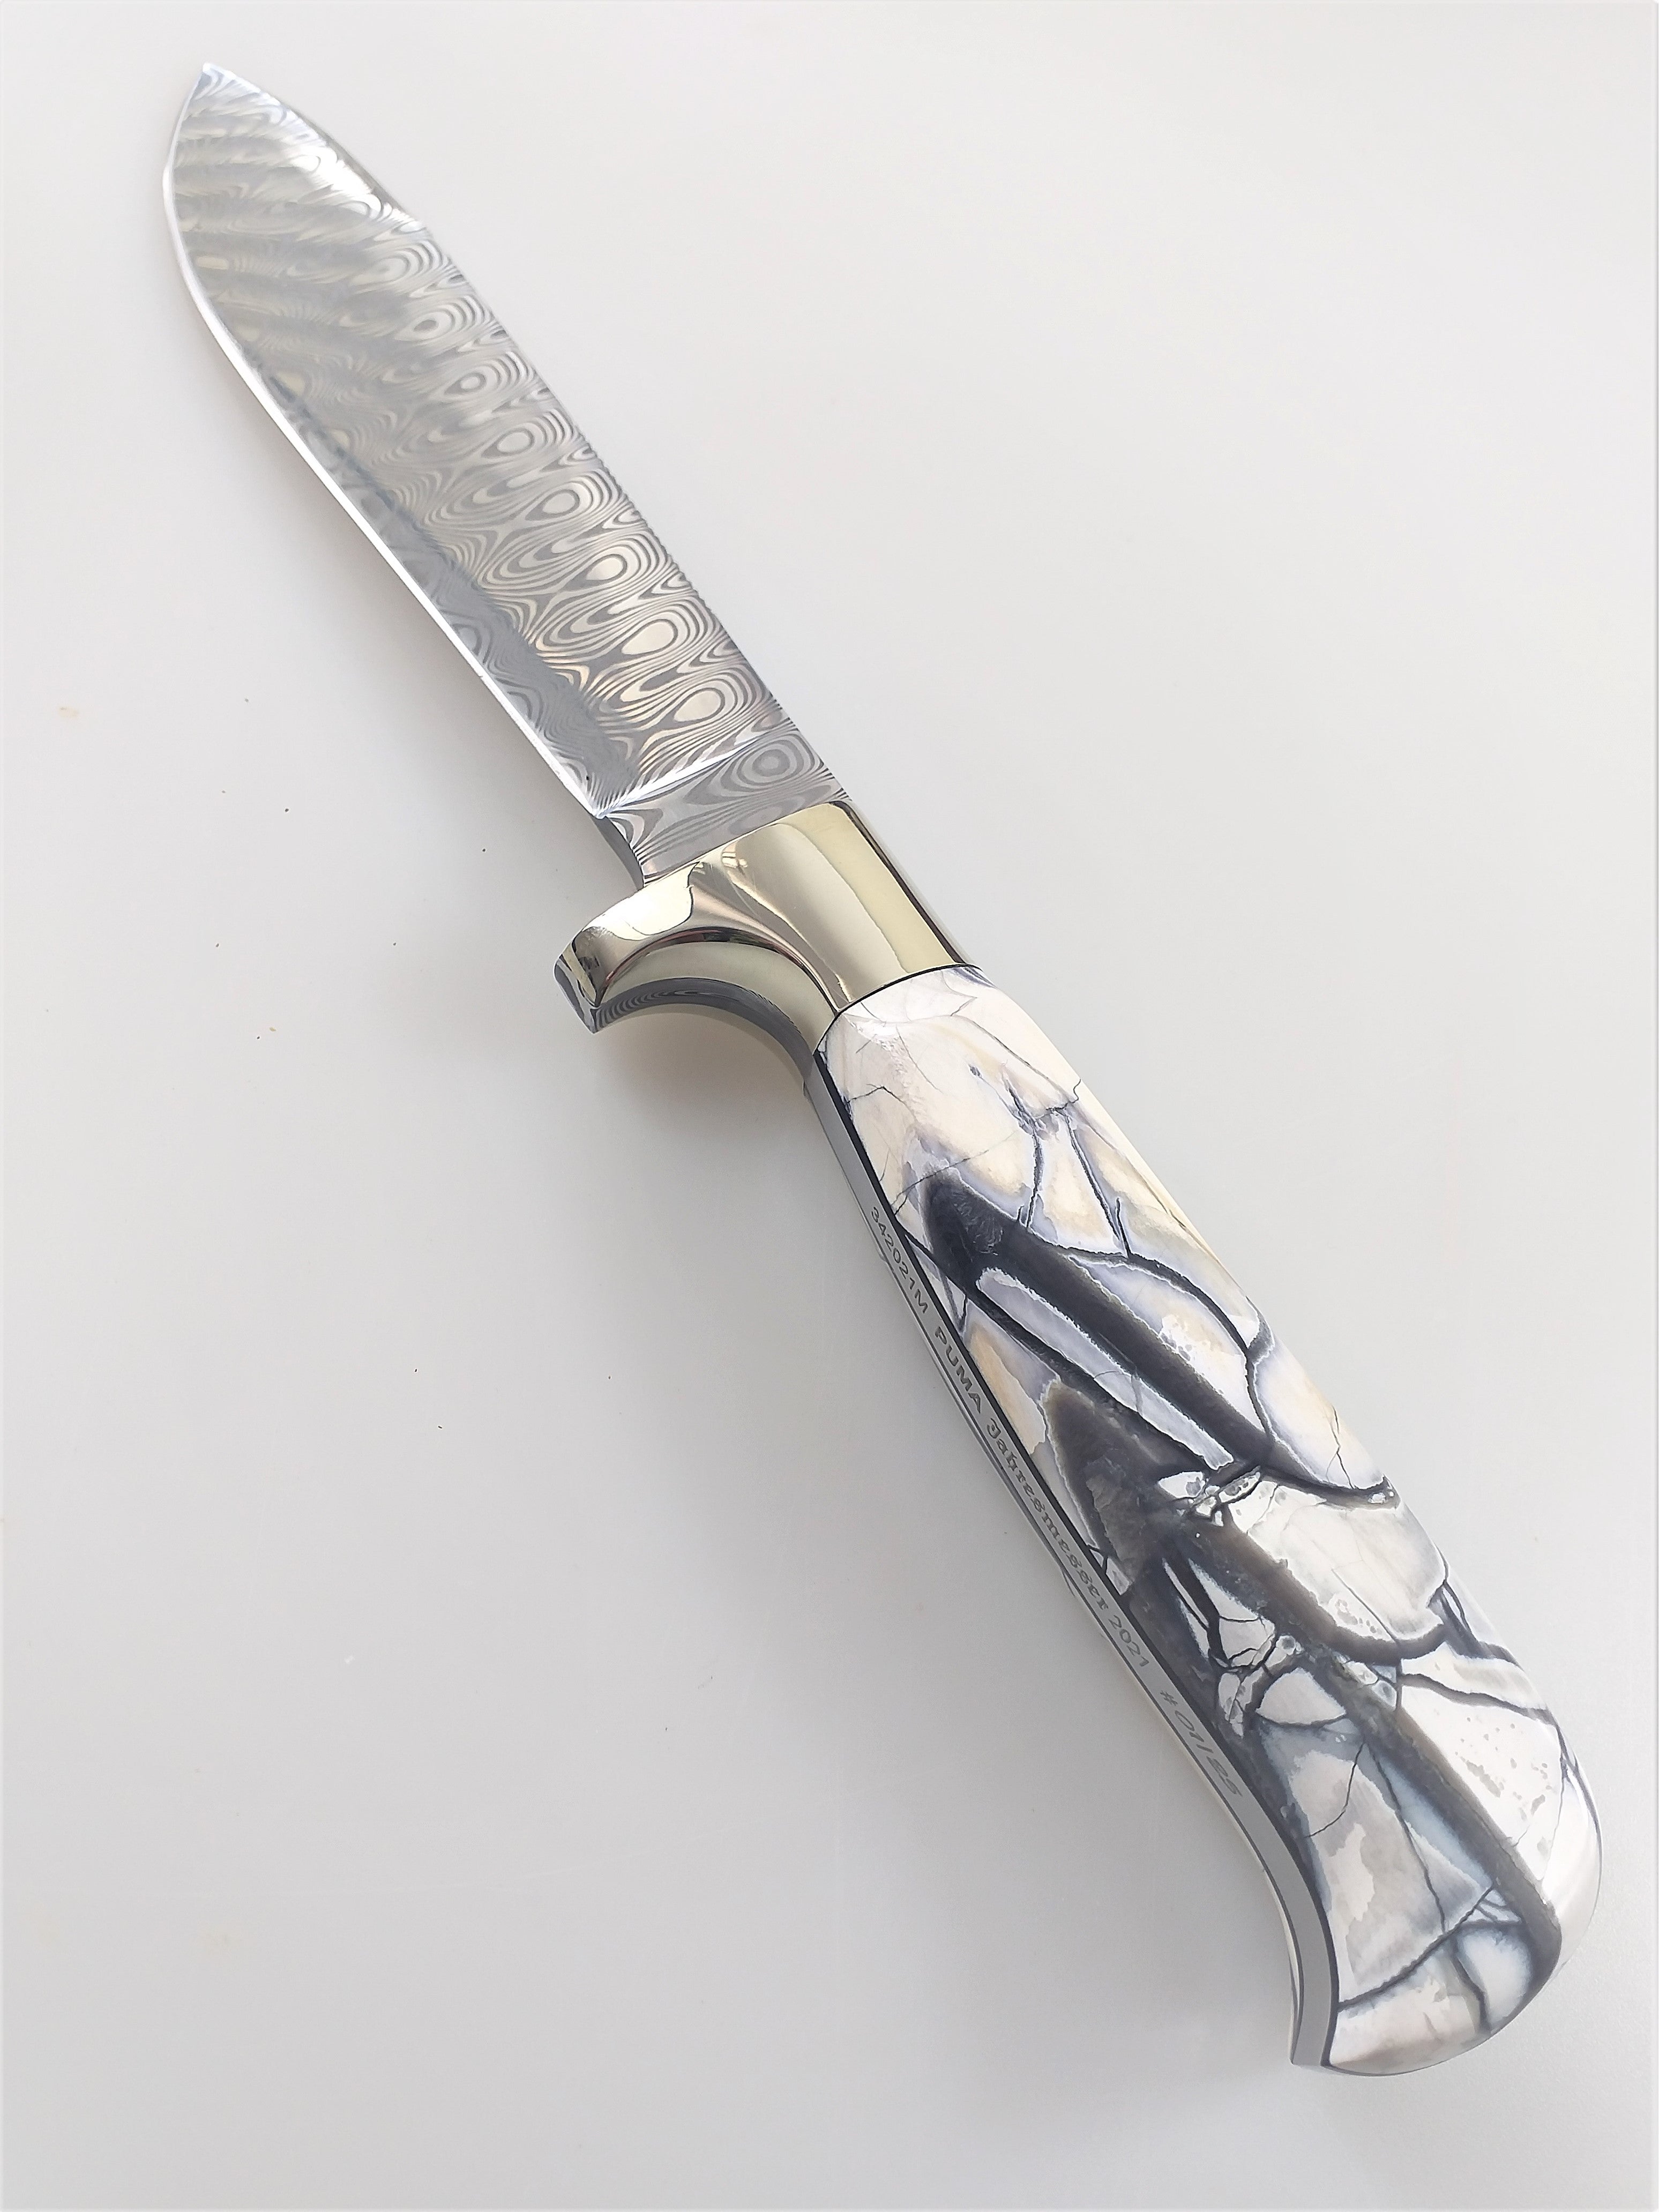 Puma Knives Evolution German Made Knife Set